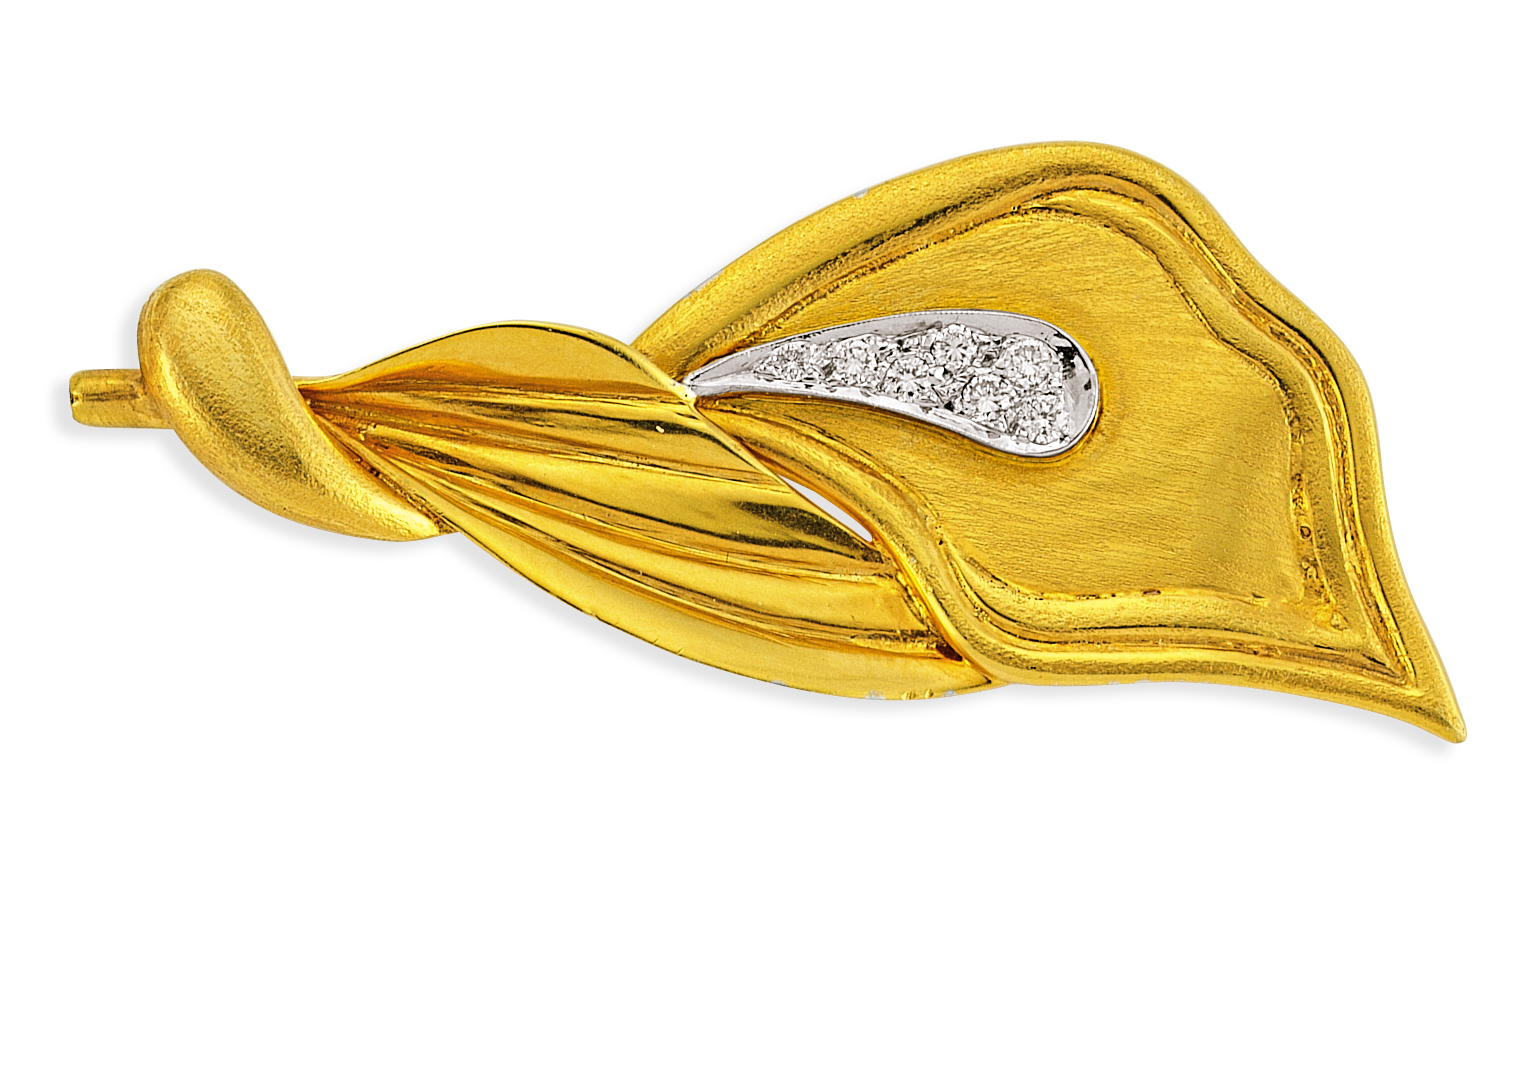  Pırlanta Altın Broş - 3000090 